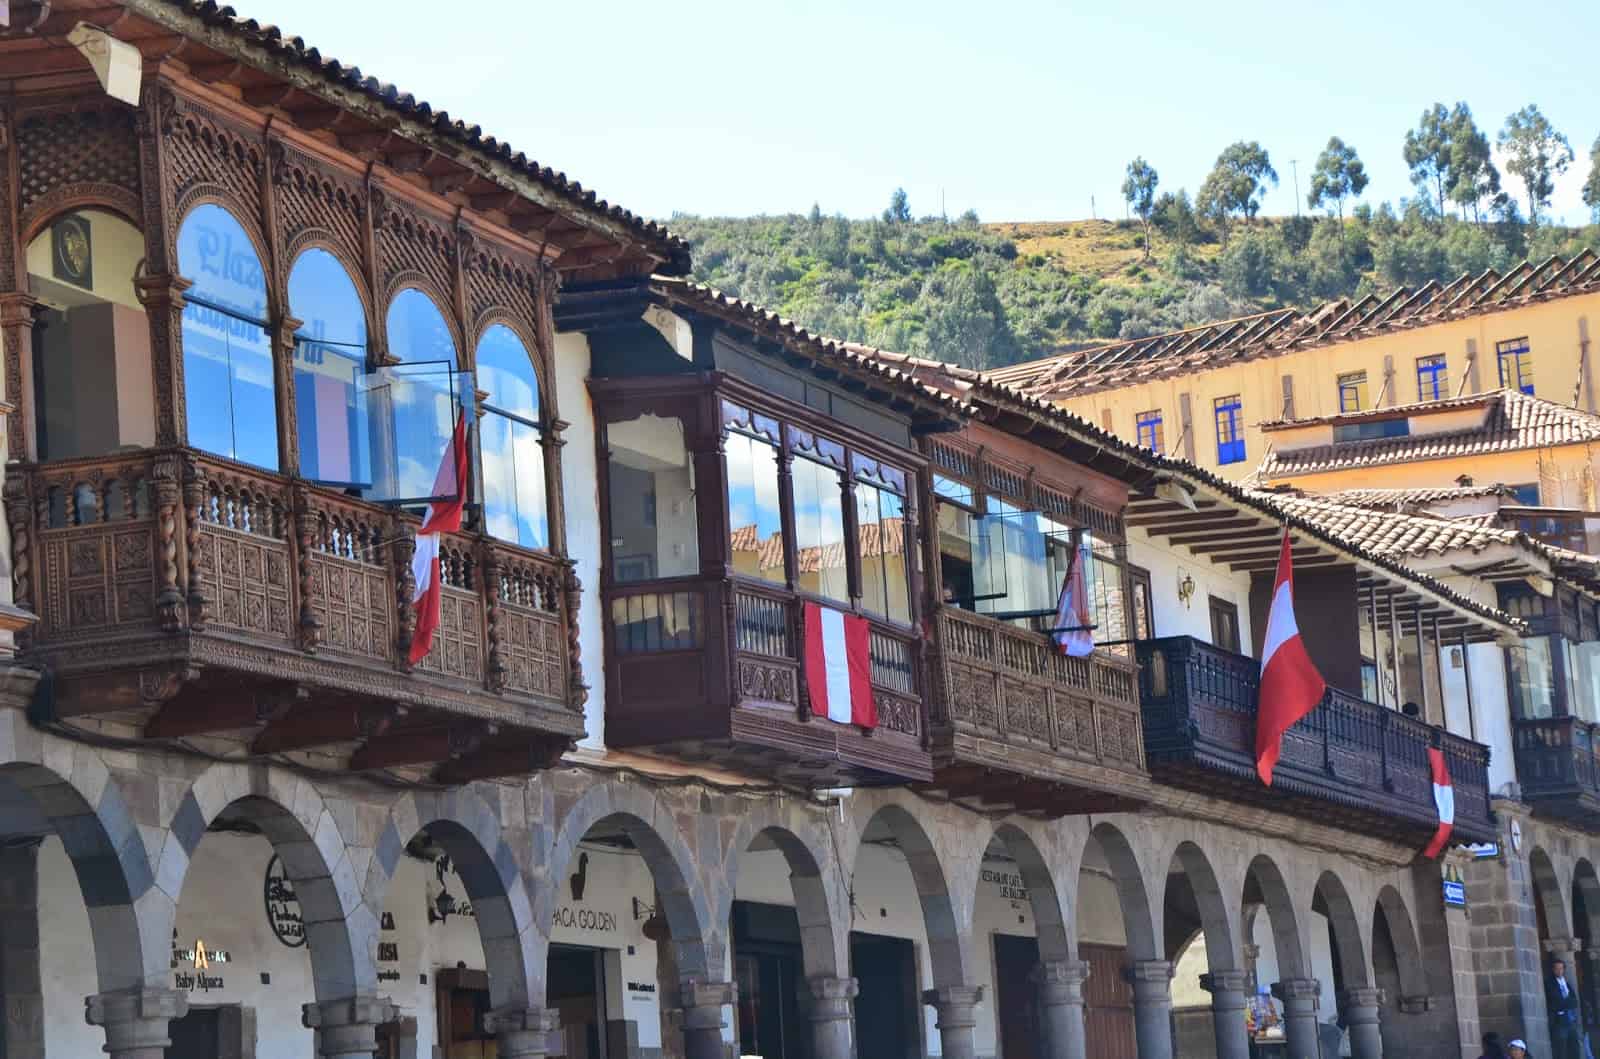 Portals and balconies on Plaza de Armas in Cusco, Peru